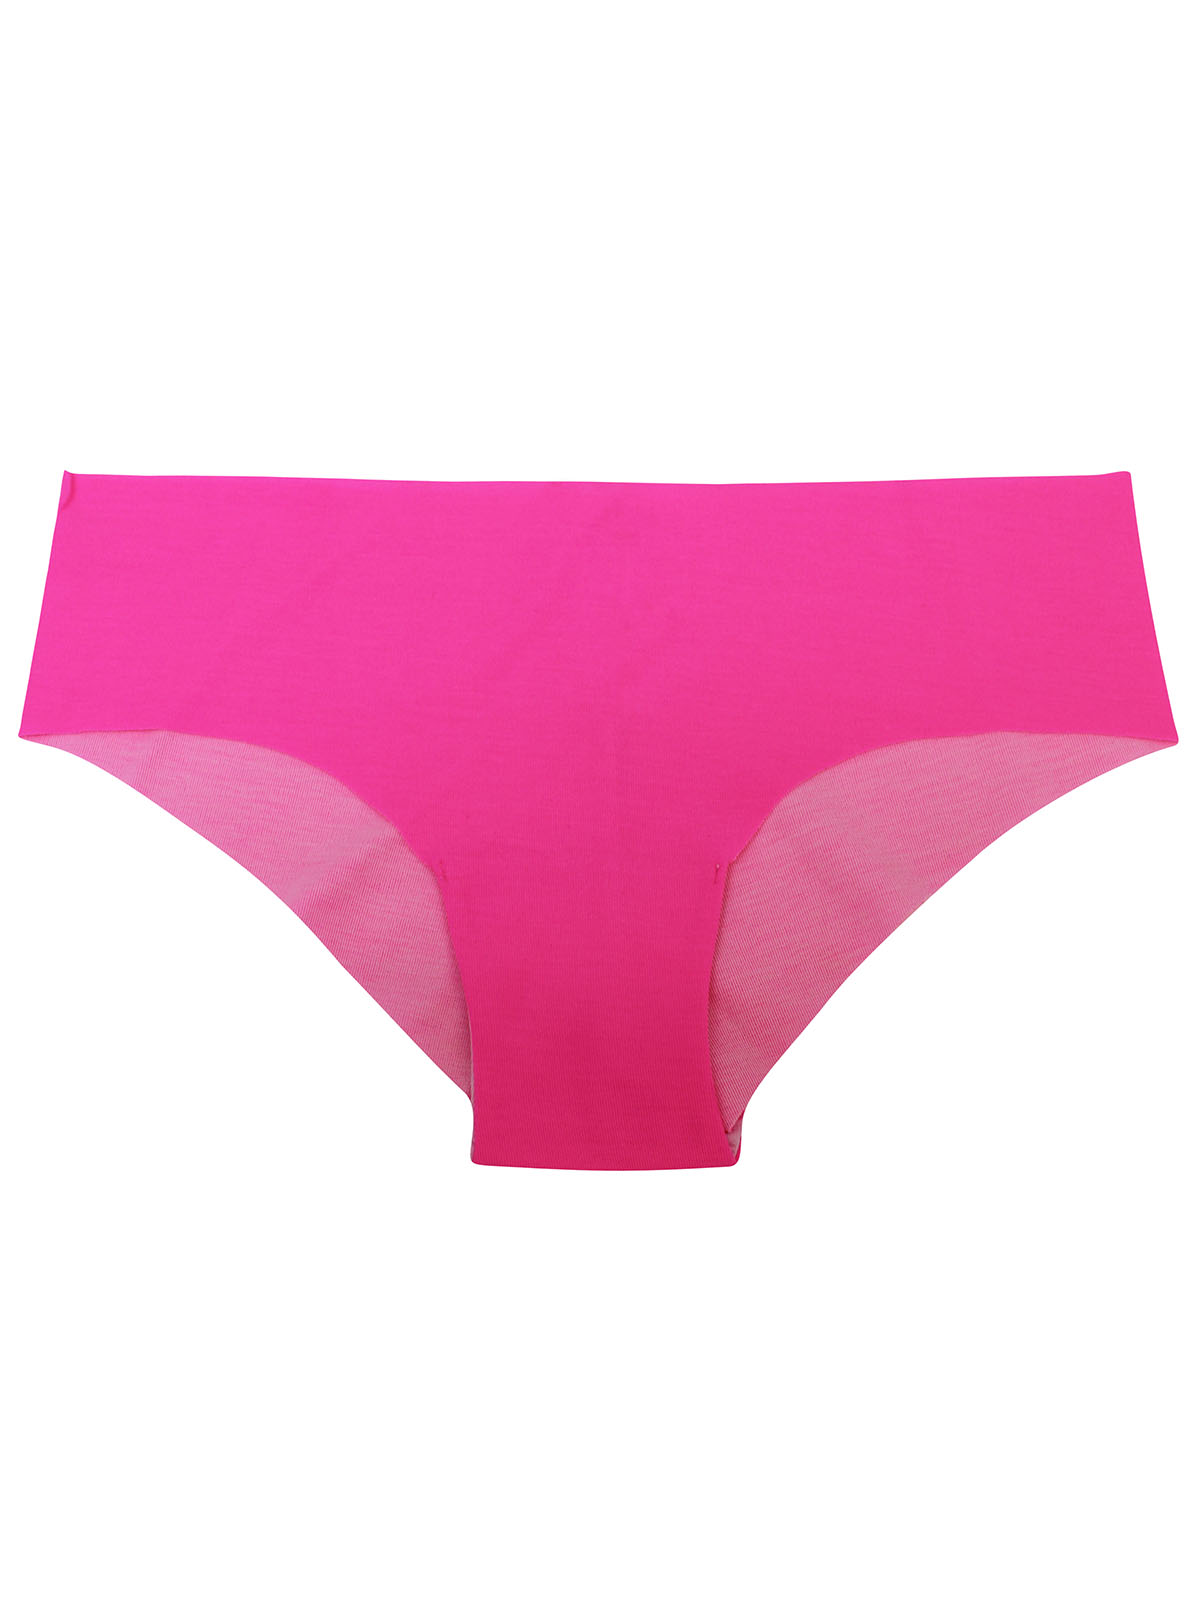 La Senza Smooth Baby Pink Thong Panty at Rs 678/piece